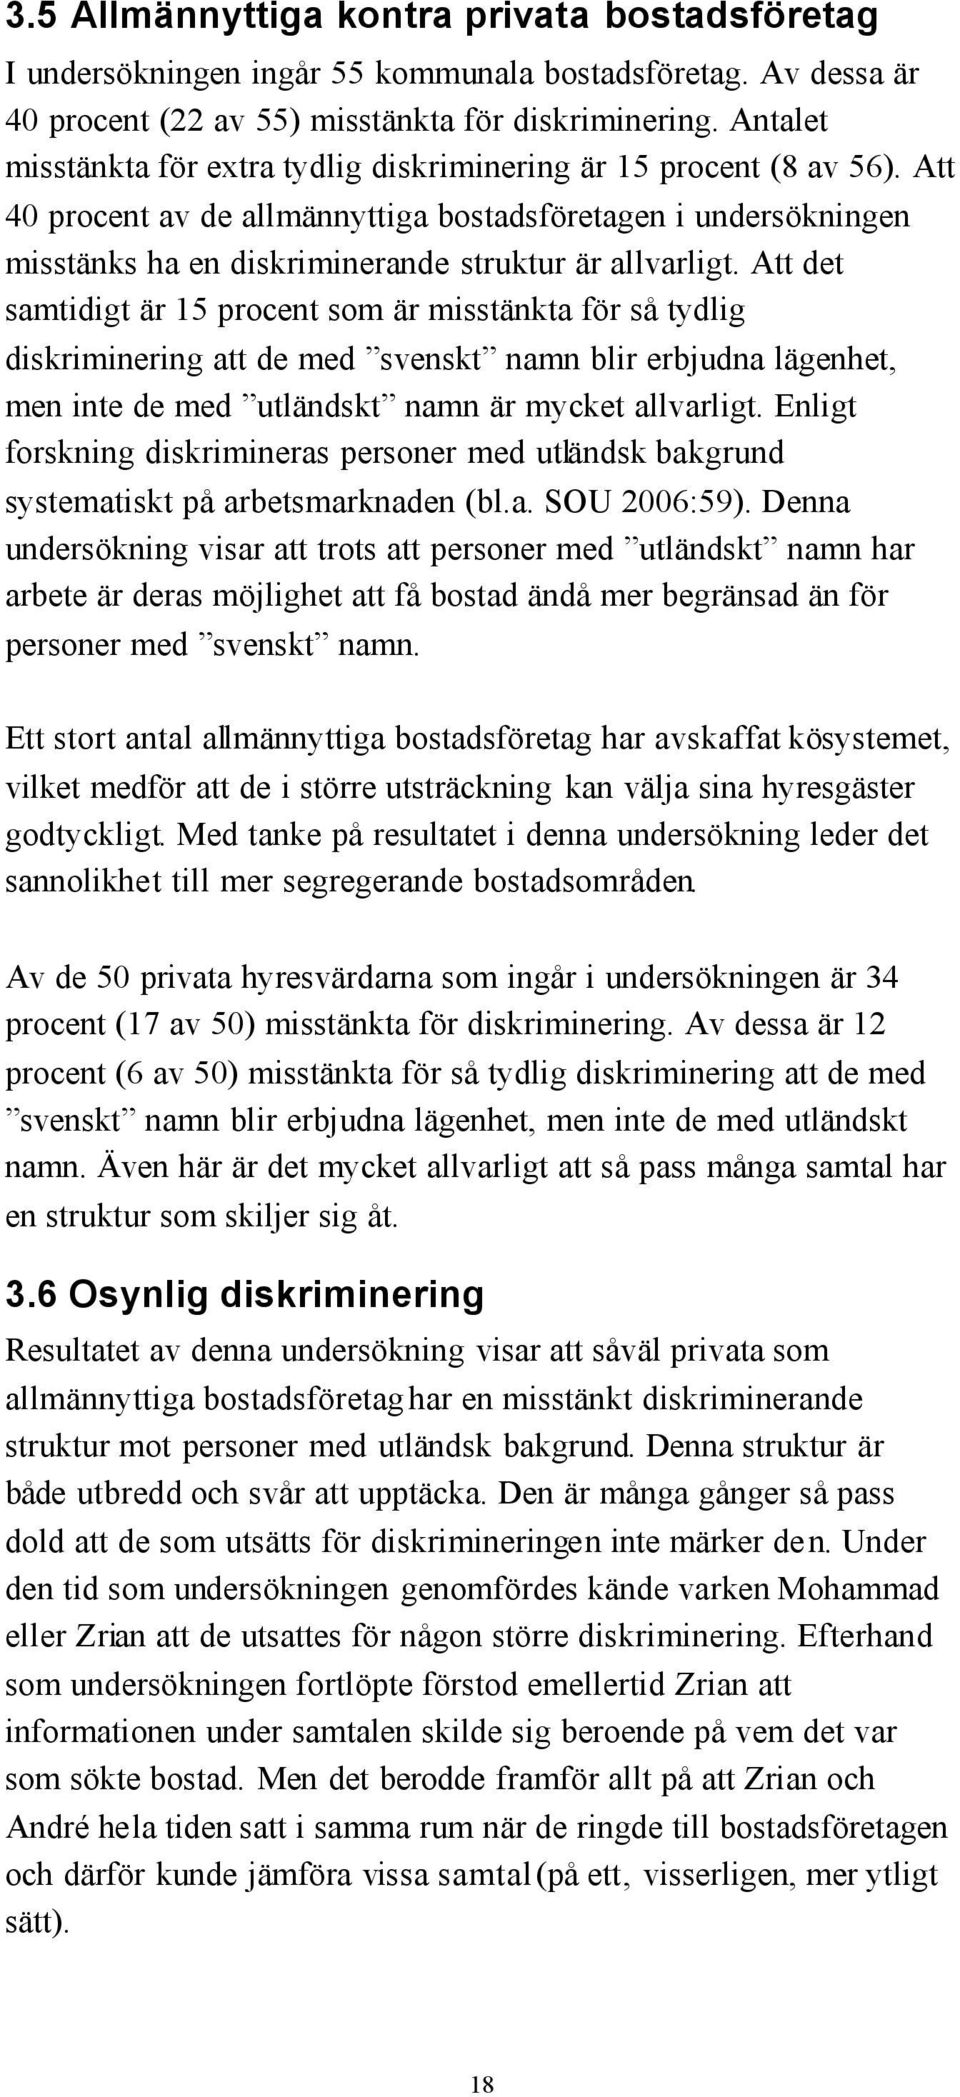 Att det samtidigt är 15 procent som är misstänkta för så tydlig diskriminering att de med svenskt namn blir erbjudna lägenhet, men inte de med utländskt namn är mycket allvarligt.